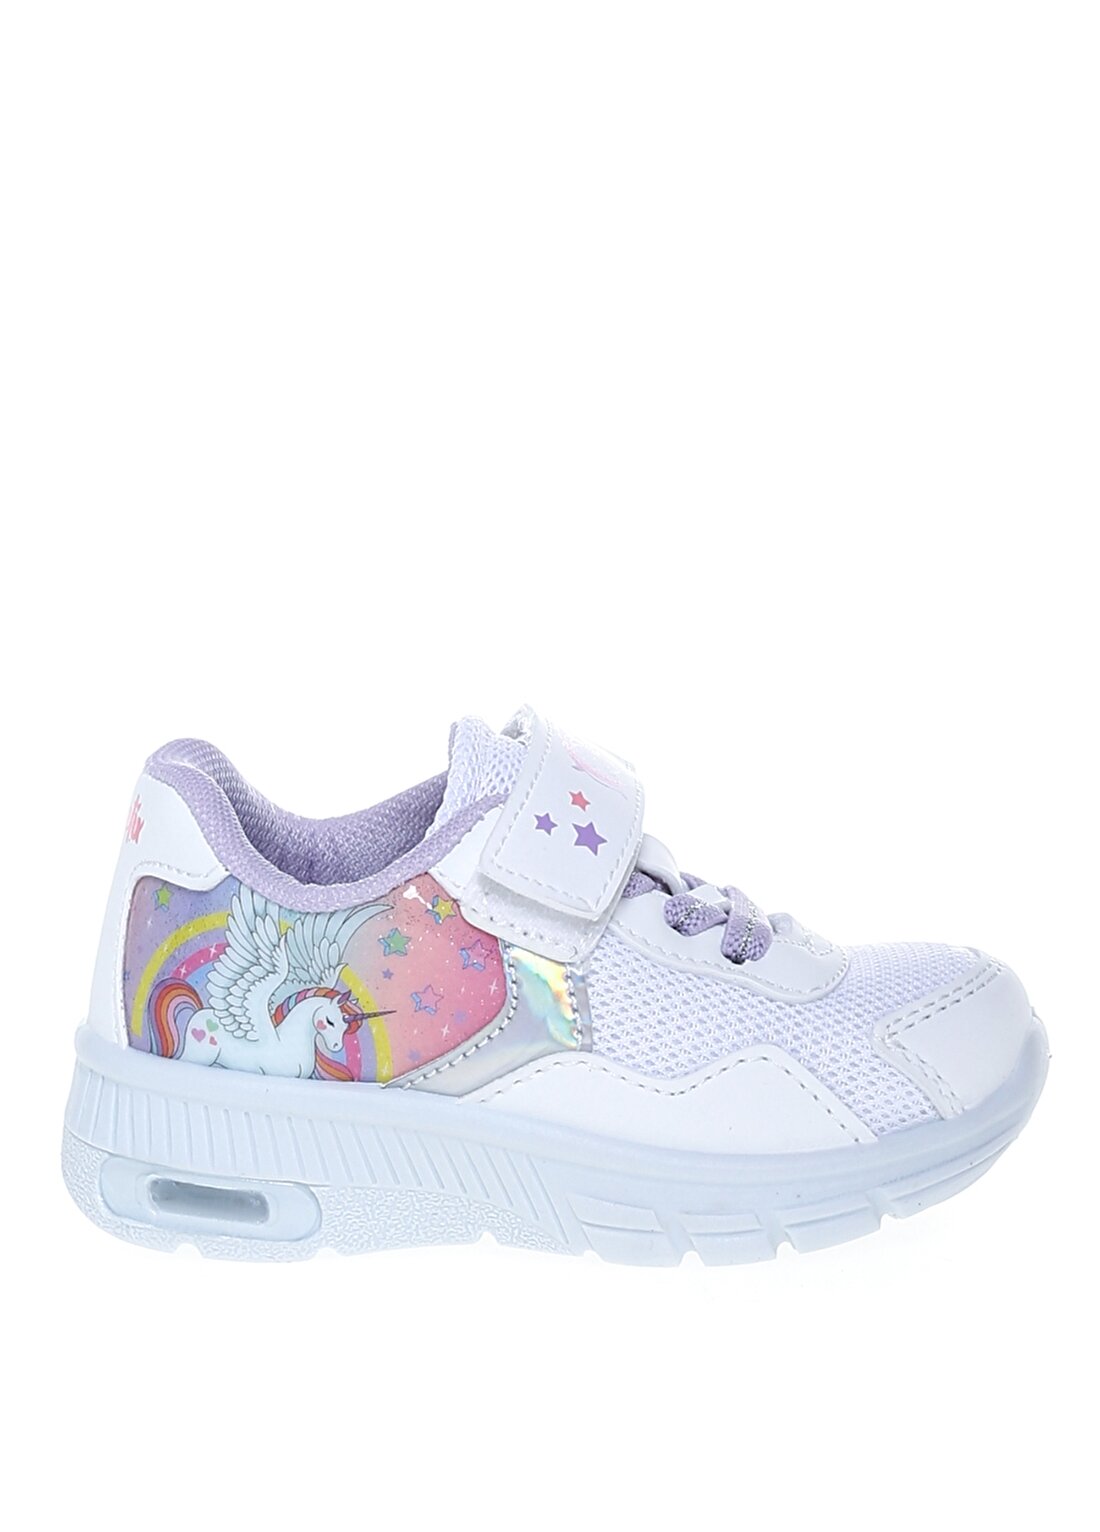 Kinetix AS00802592 Nessi Beyaz Kız Çocuk Yürüyüş Ayakkabısı